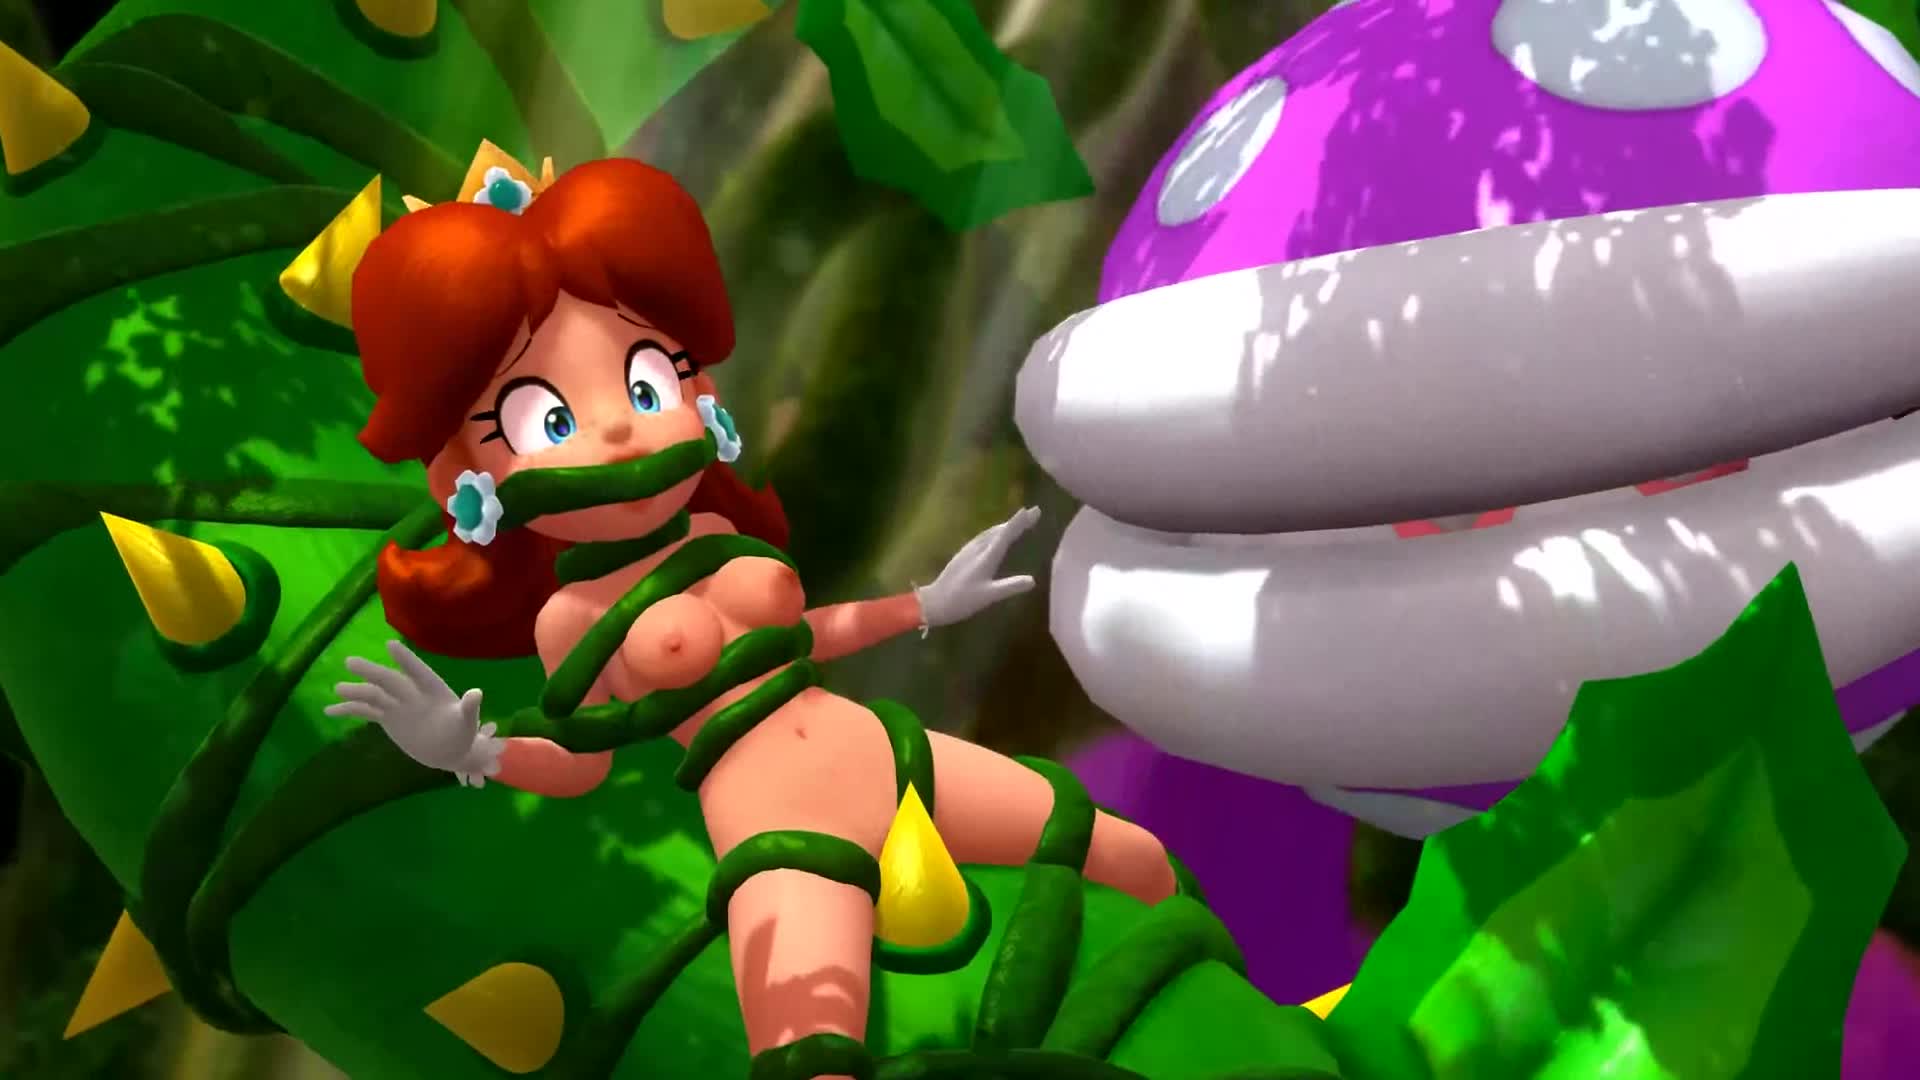 Princess Daisy Tied Up Porn - Nintendo Piranha Creeper Bondage Tagme - Lewd.ninja